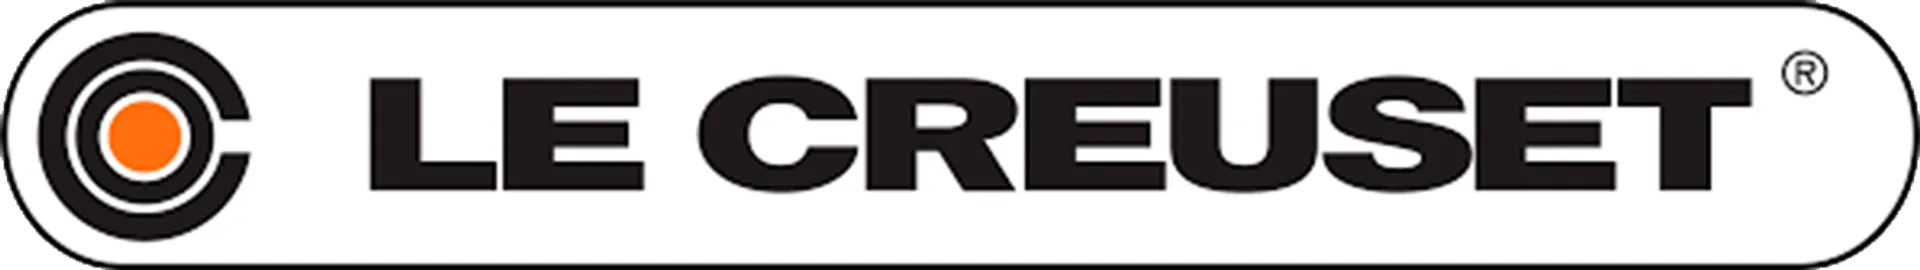 LE CREUSET logo die aktuell Flugblatt